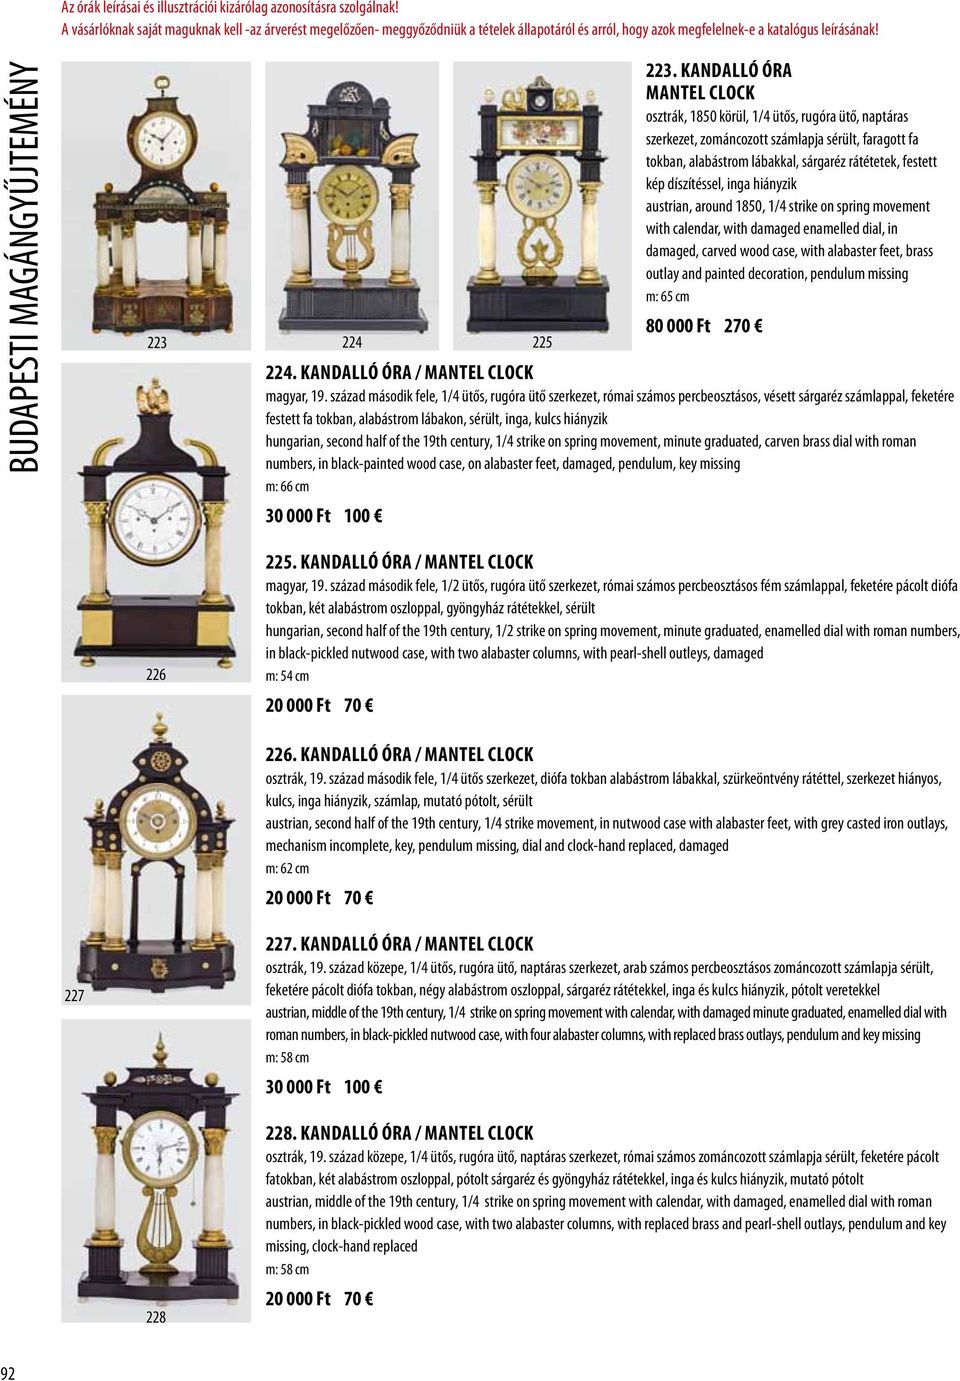 Kandalló óra Mantel clock osztrák, 1850 körül, 1/4 ütős, rugóra ütő, naptáras szerkezet, zománcozott számlapja sérült, faragott fa tokban, alabástrom lábakkal, sárgaréz rátétetek, festett kép